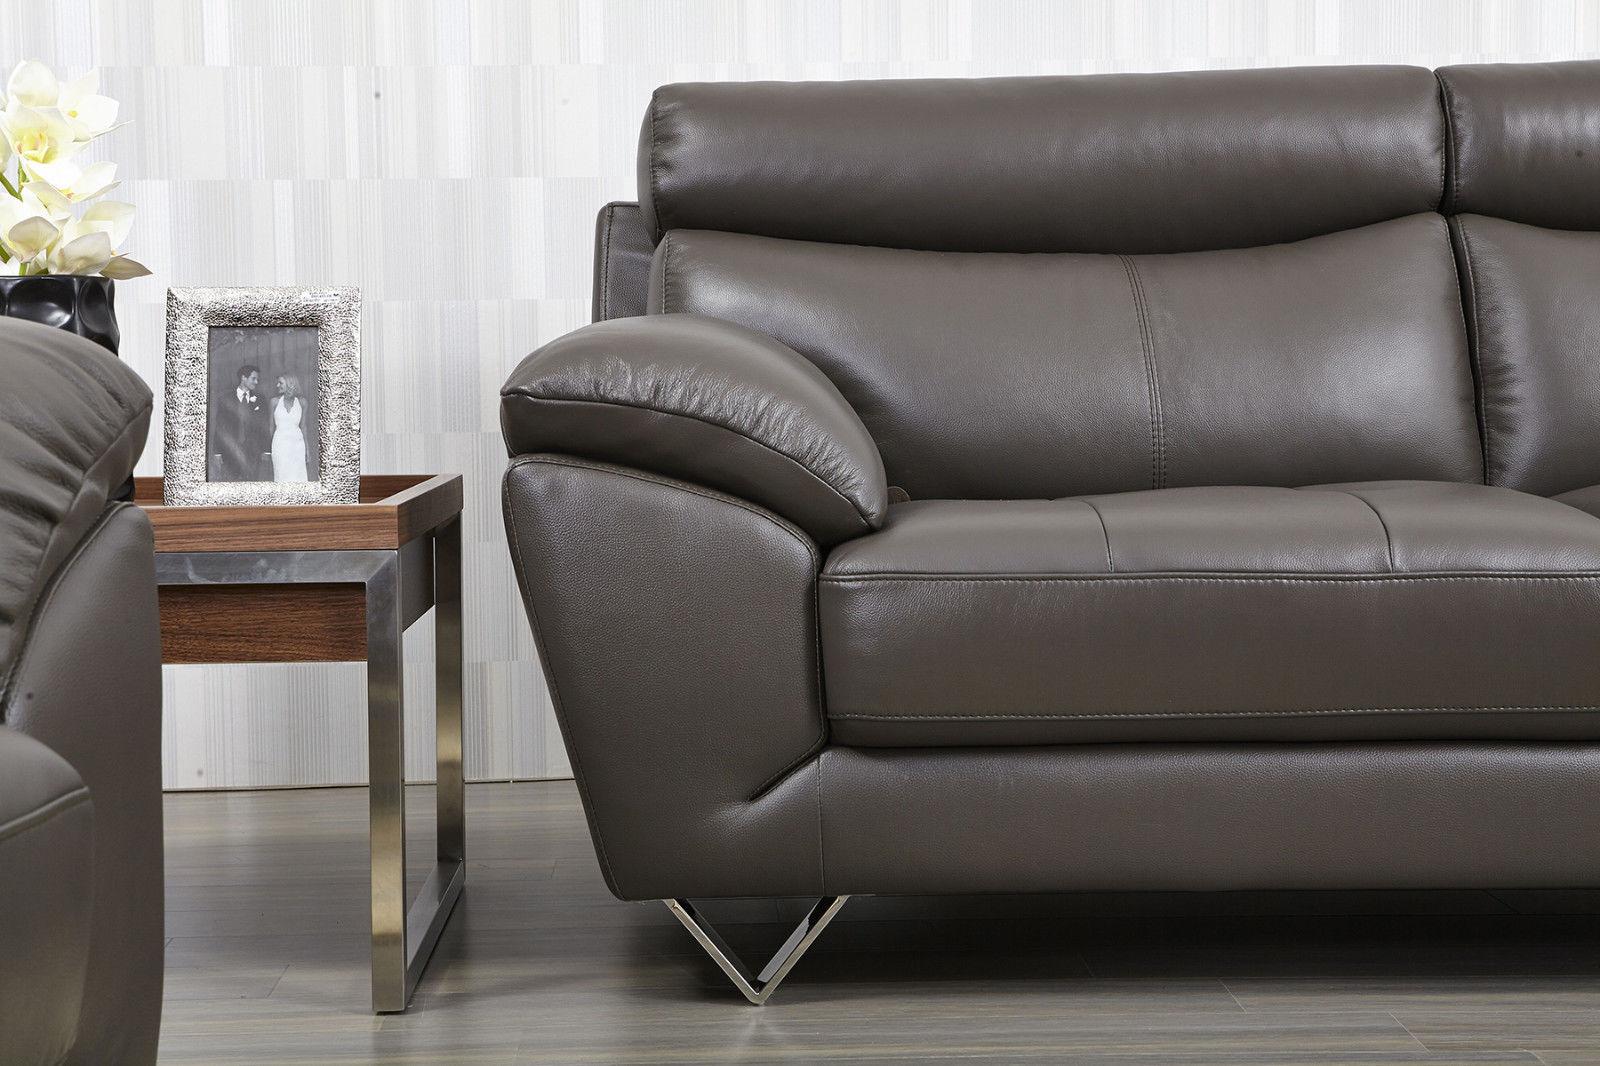 

                    
Orren Ellis Deziree Sofa Set Dark Gray Leather Purchase 
